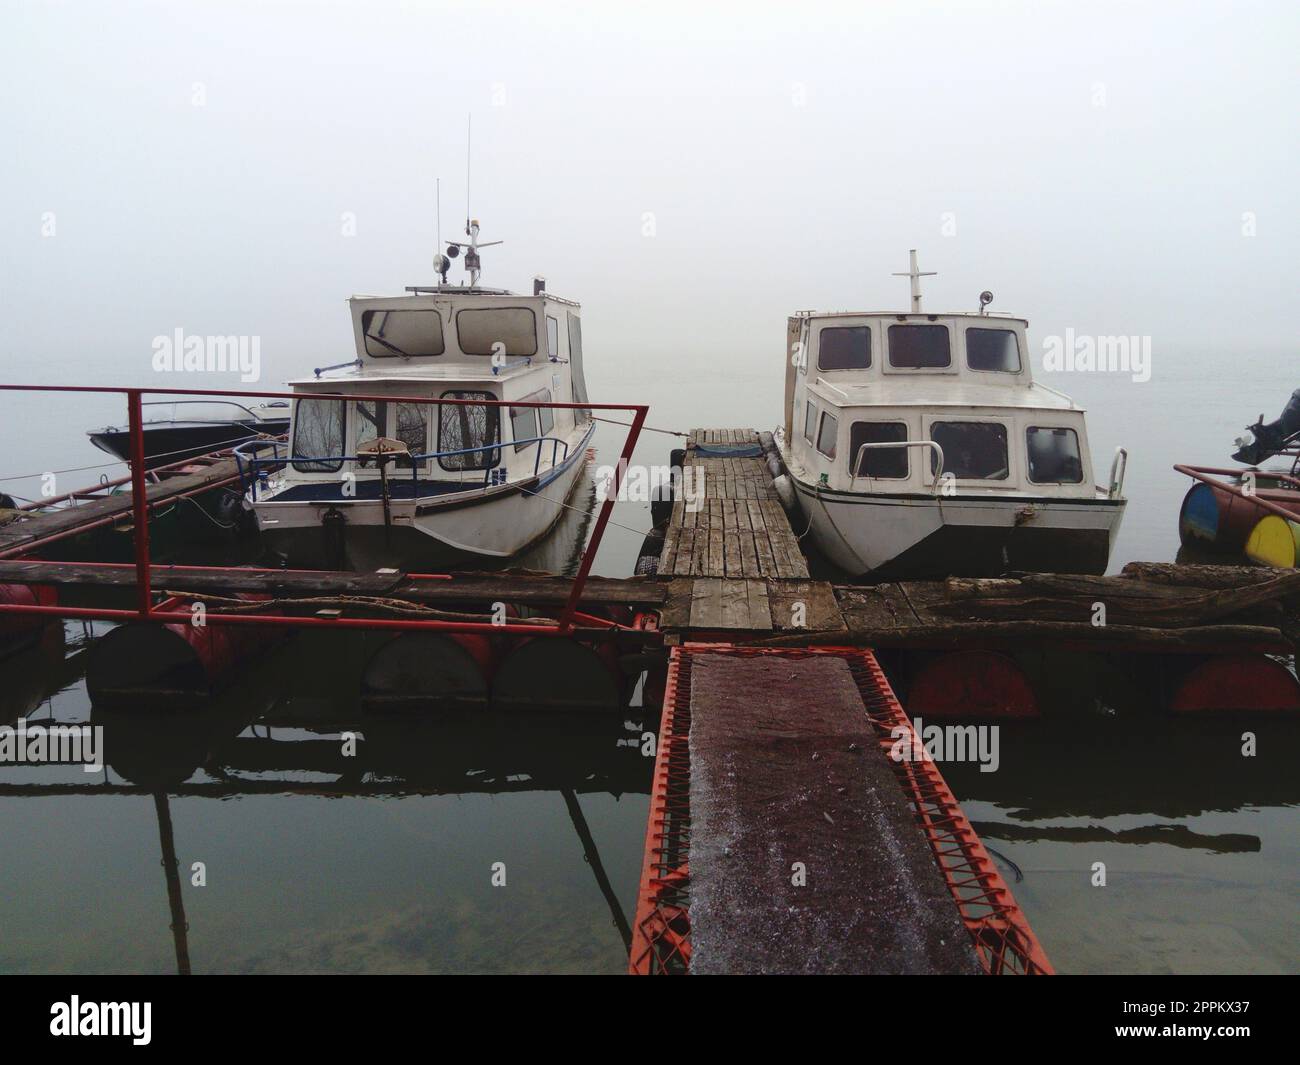 Belgrade, Serbie, le 14 janvier 2020 deux bateaux blancs sont partis pour l'hiver sur une jetée en bois. Temps brumeux dans le sud de l'Europe. Janvier jour nuageux. Reflet du transport par eau dans une rivière Banque D'Images